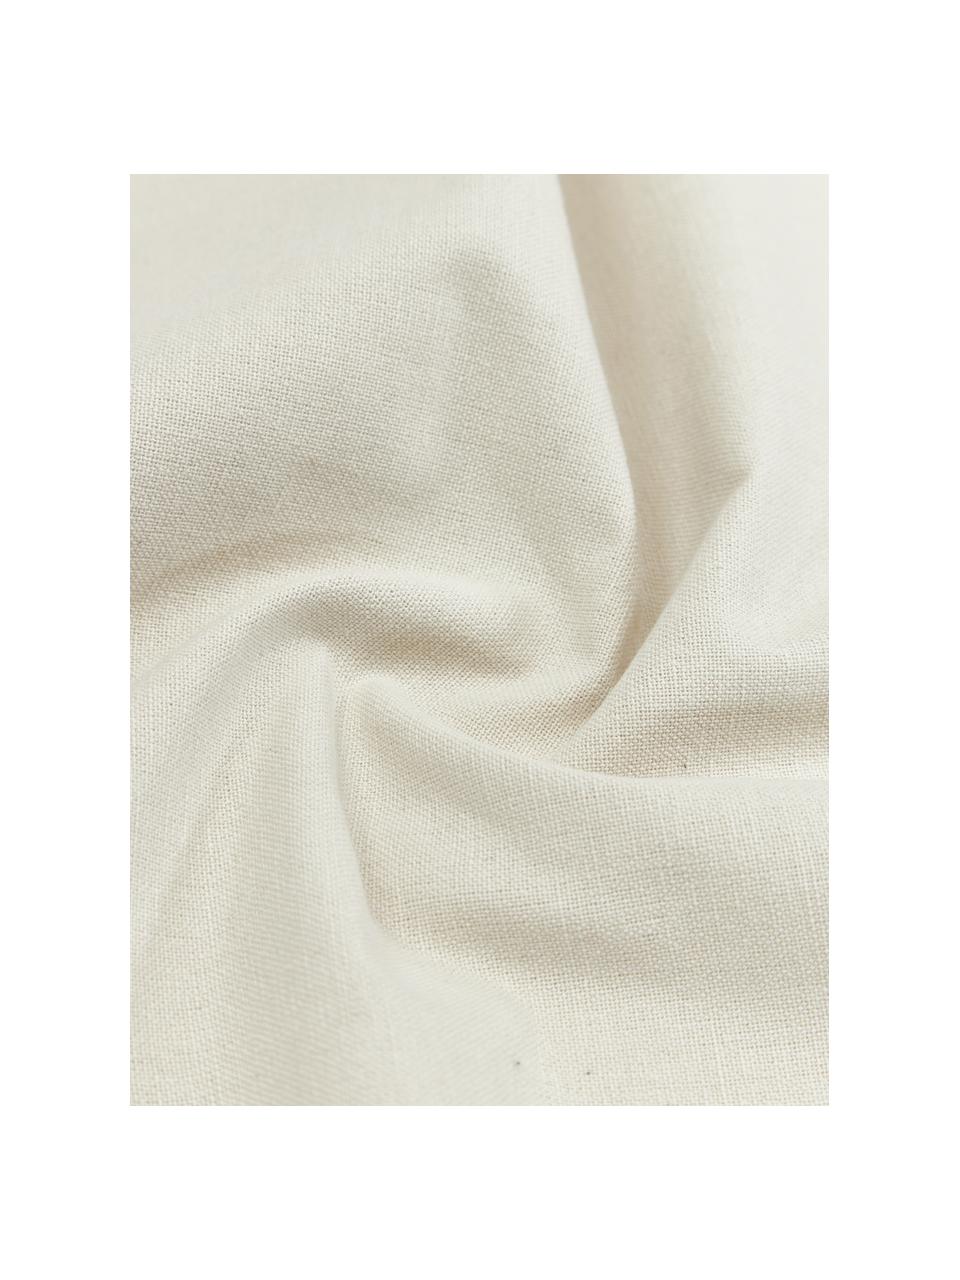 Nappe en coton blanc cassé Organic, 100 % coton, Blanc crème, rouge, Pour 6 à 10 pers. (larg. 140 x long. 250 cm)